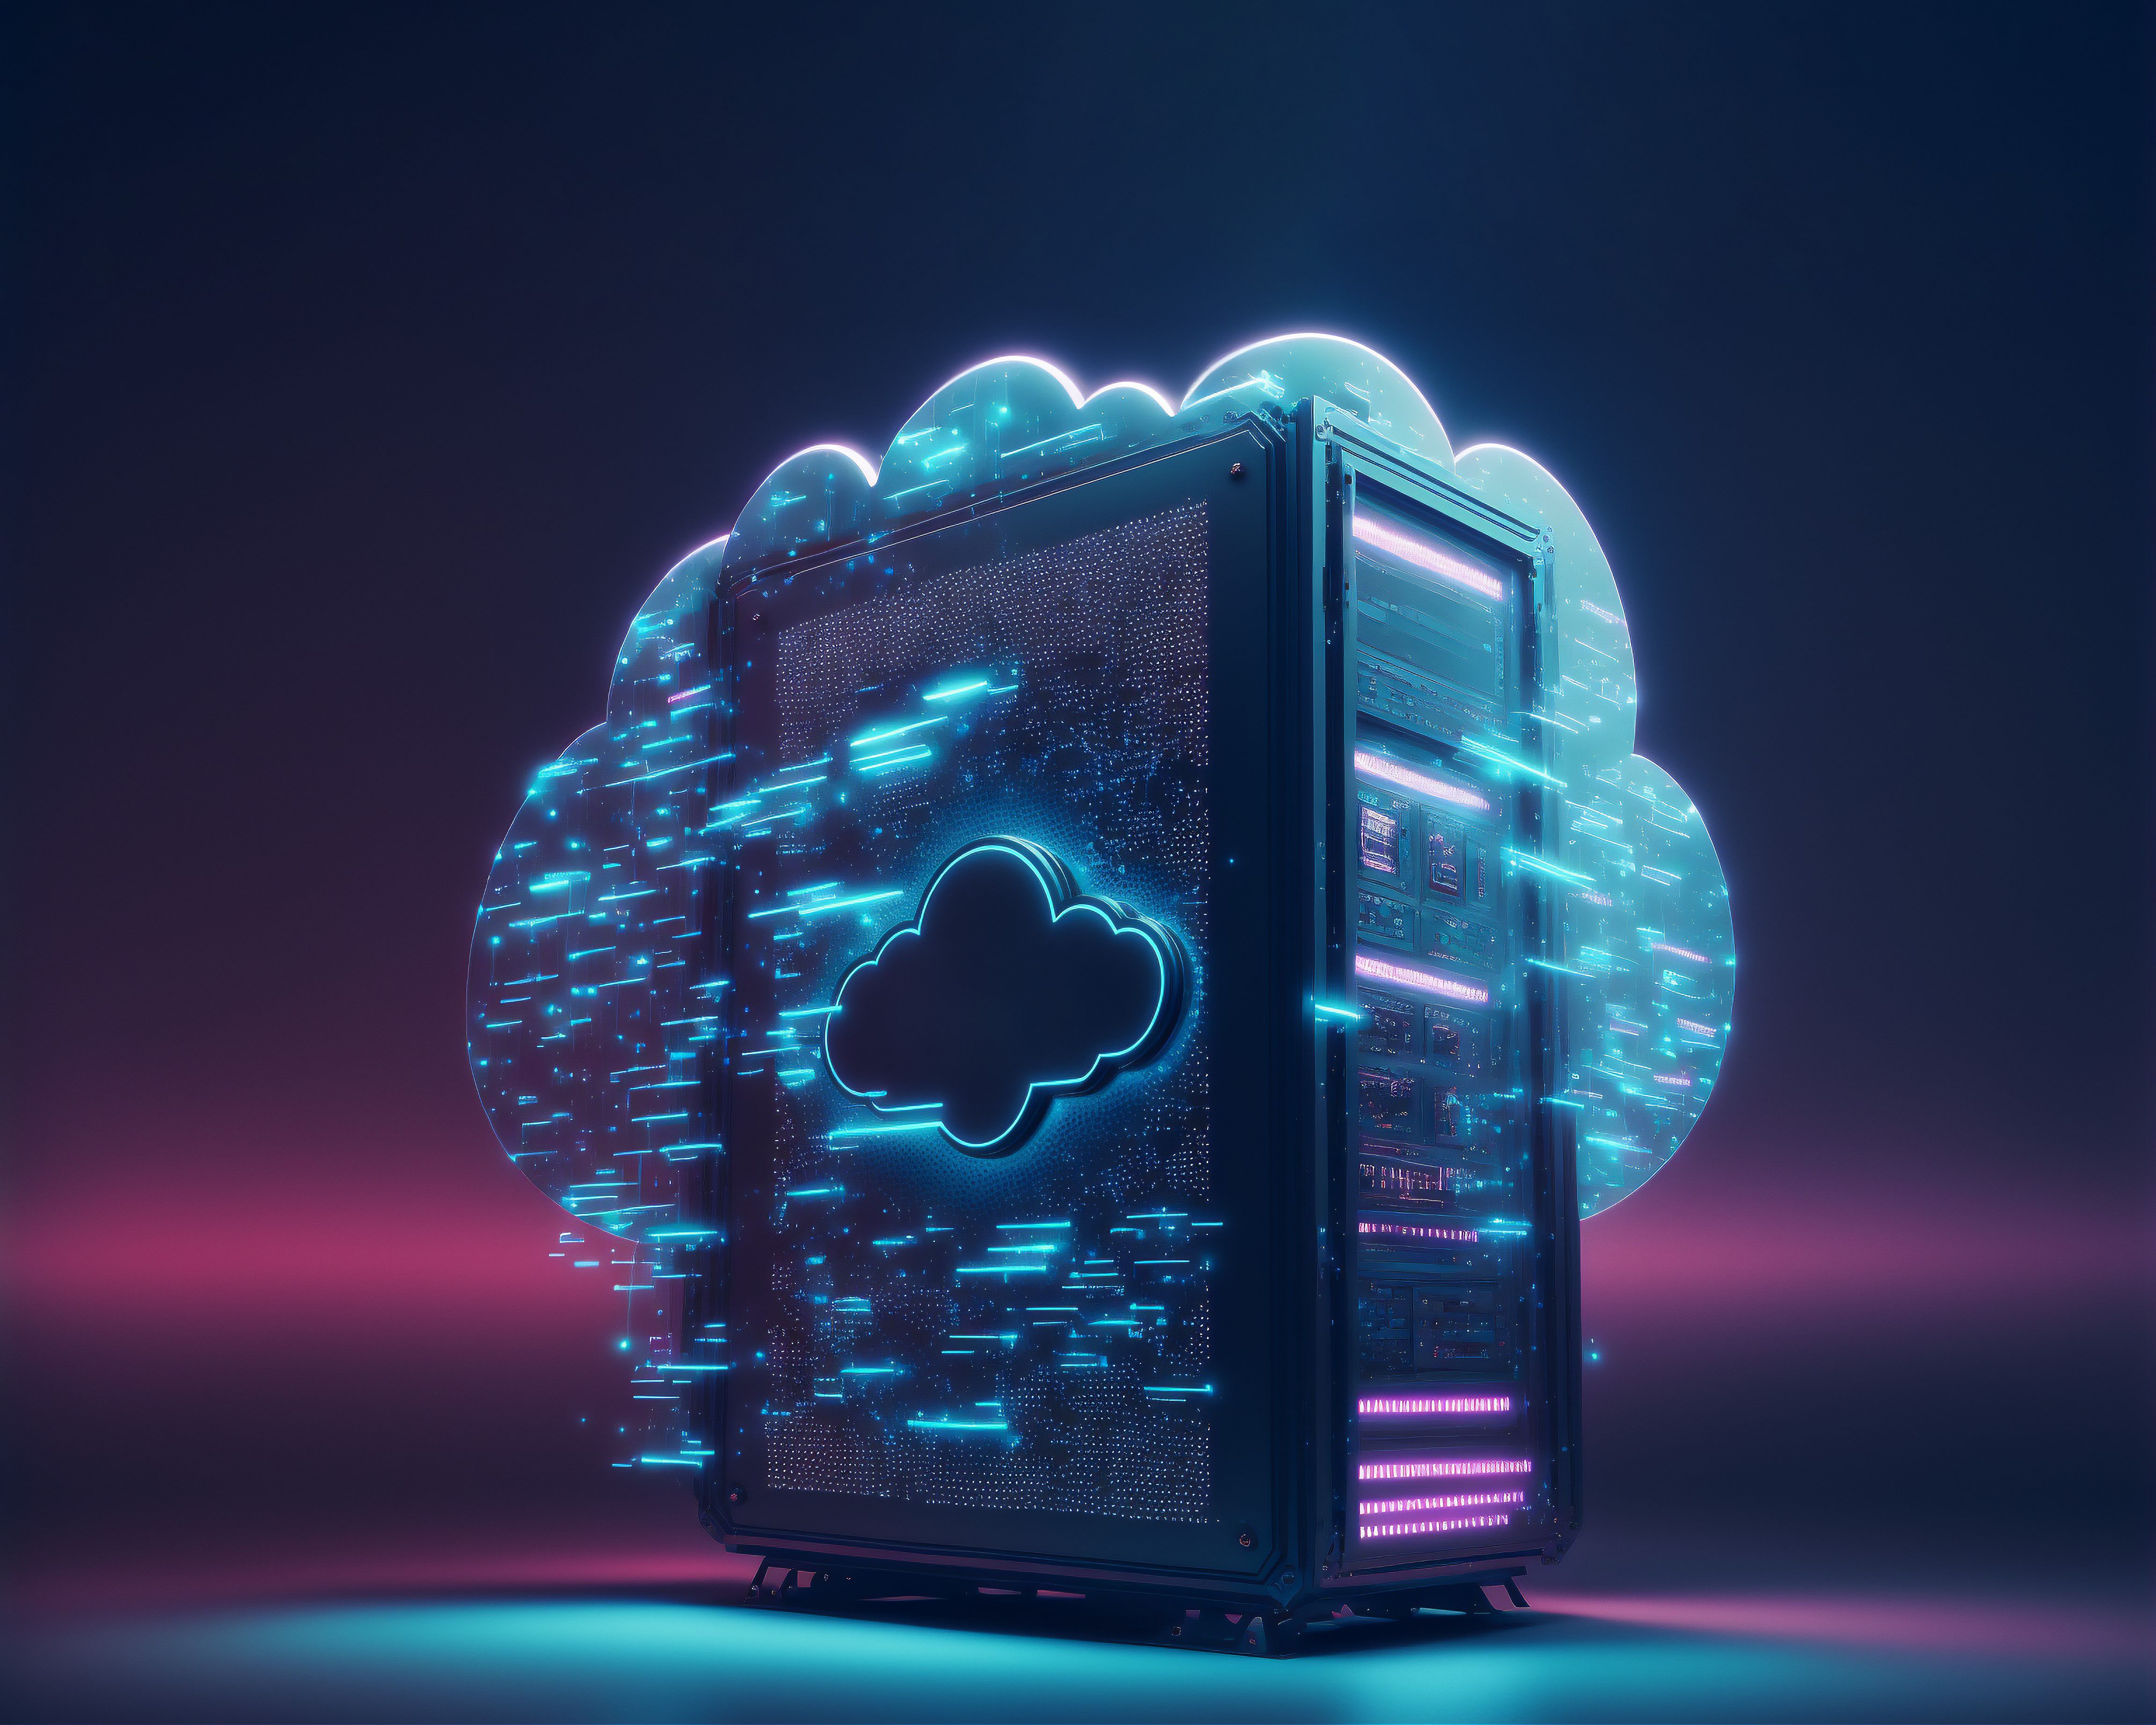 Illustration de l'hébergement web moderne avec le Cloud Hosting. 